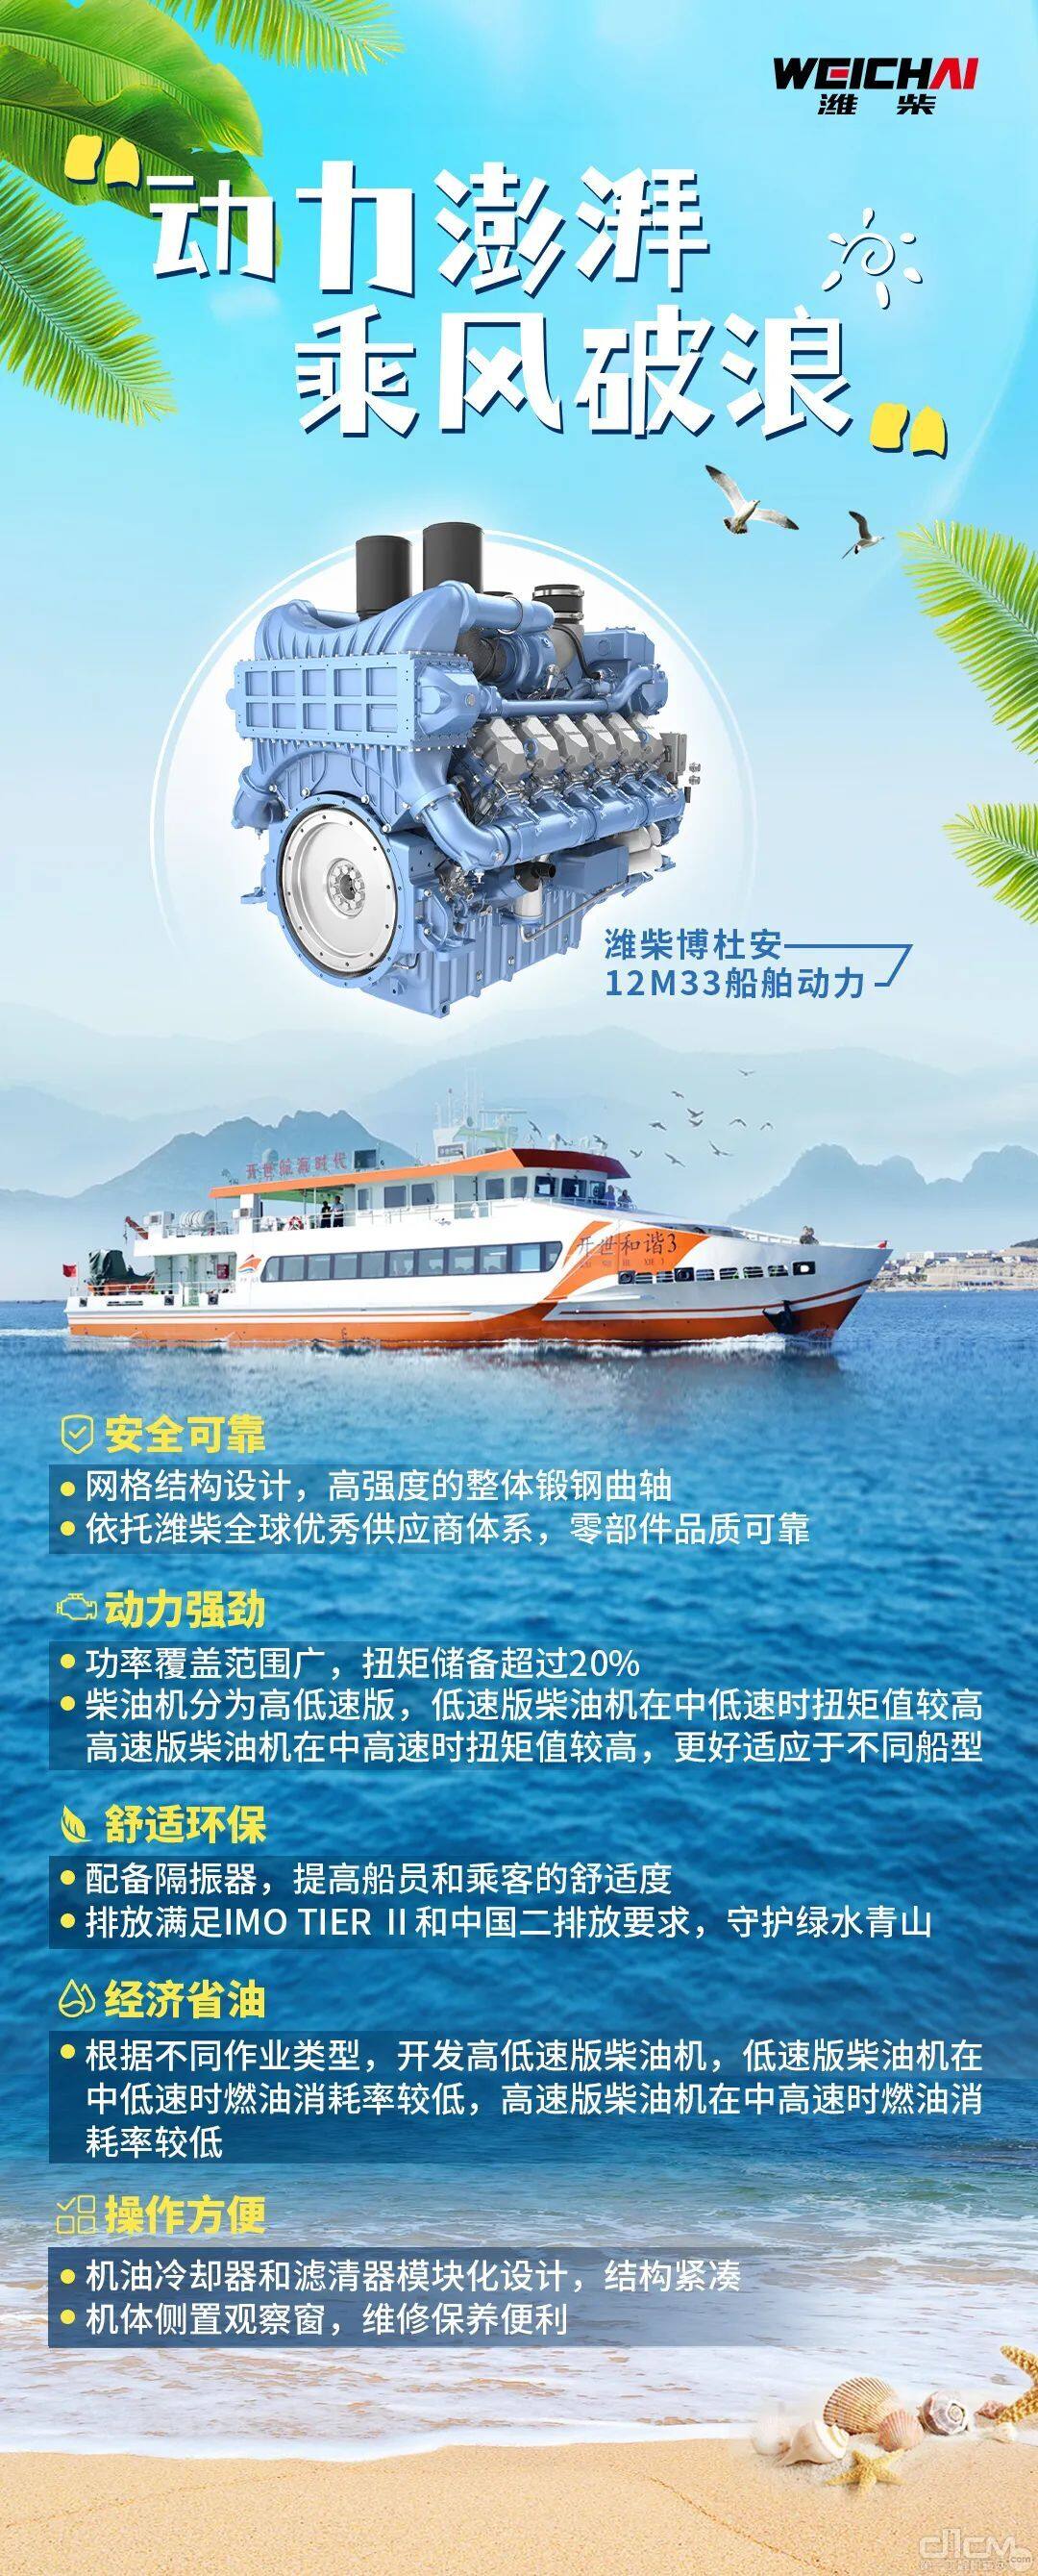 潍柴博杜安12M33船舶动力介绍